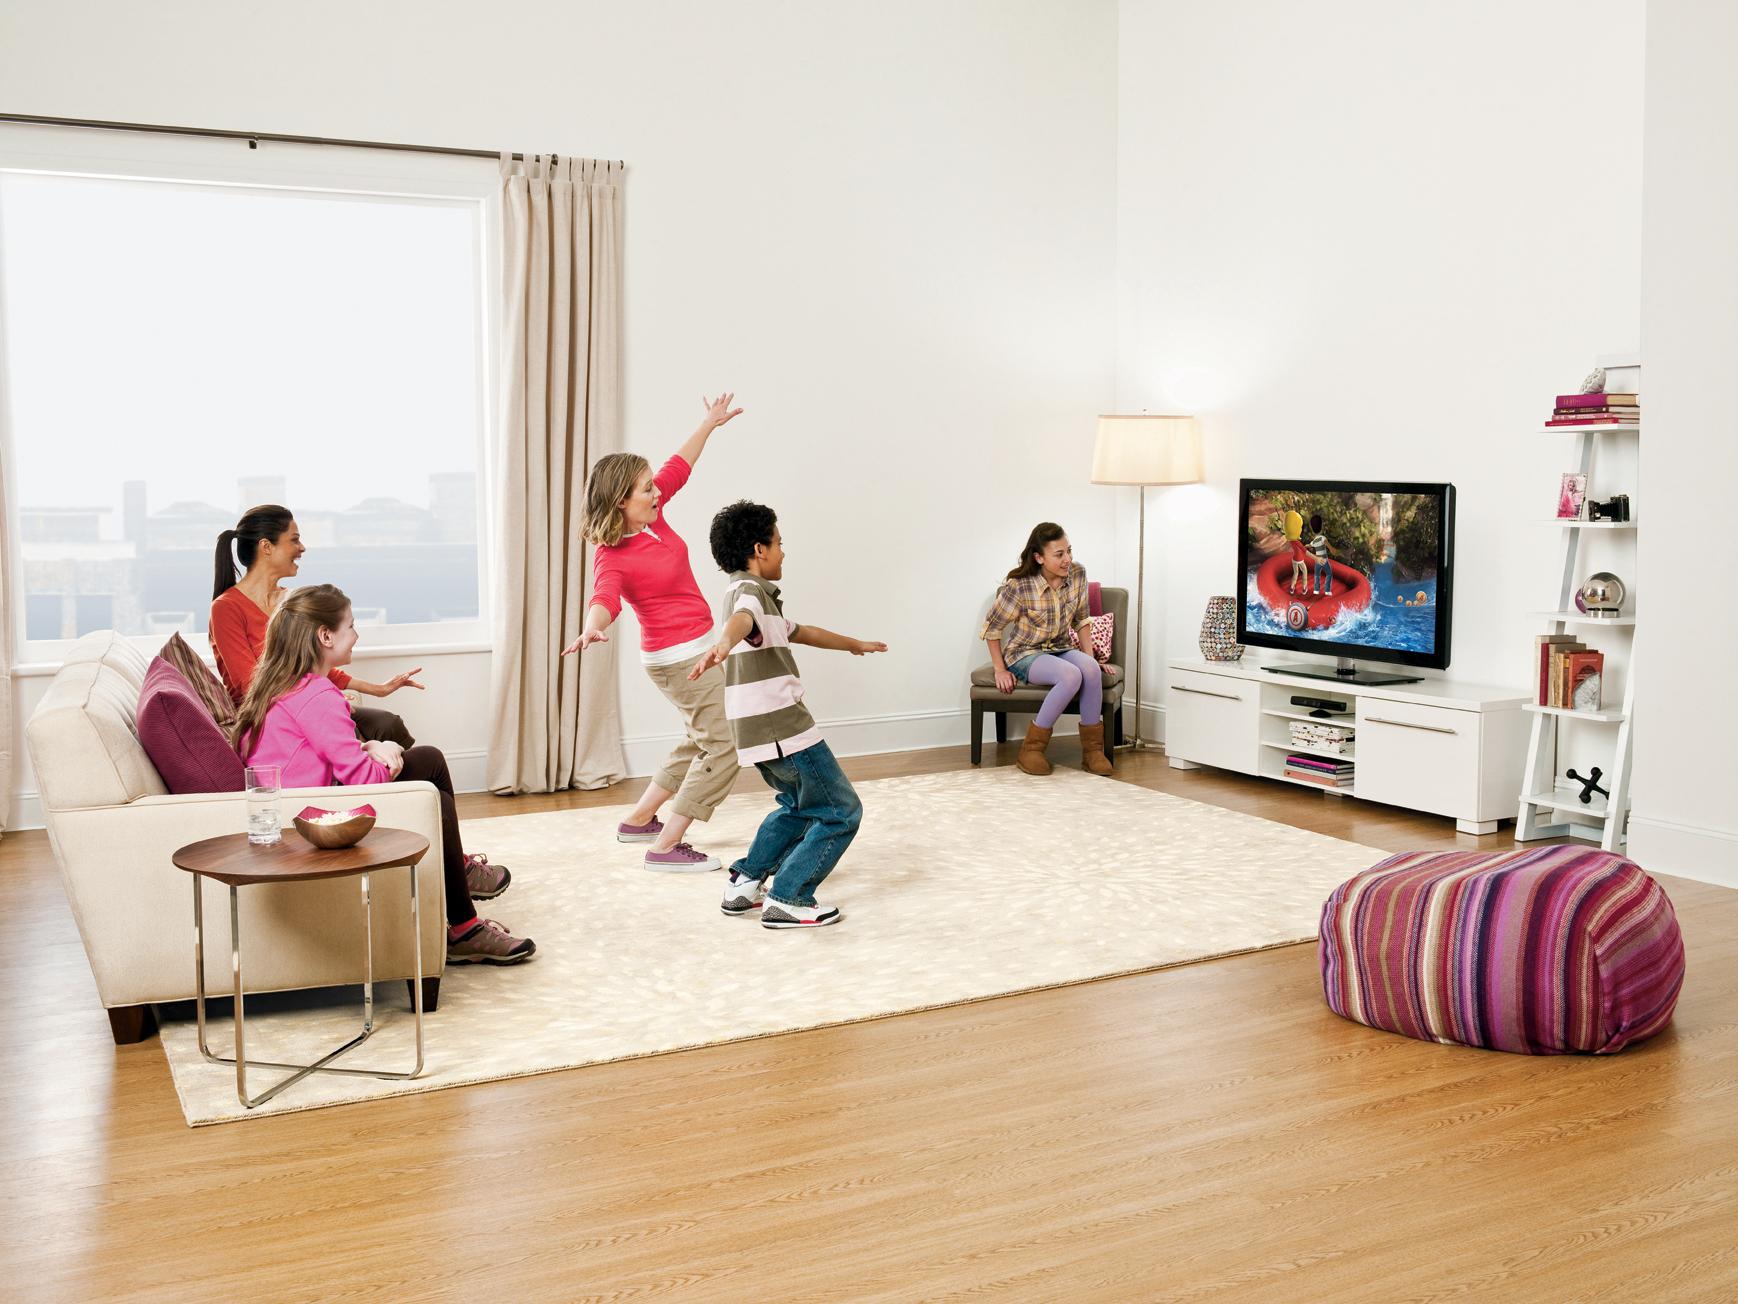 Поиграем в игру на телевизоре. Дети играют в гостиной. Играющие дети в квартире. Дети играют в комнате. Танцы перед телевизором.